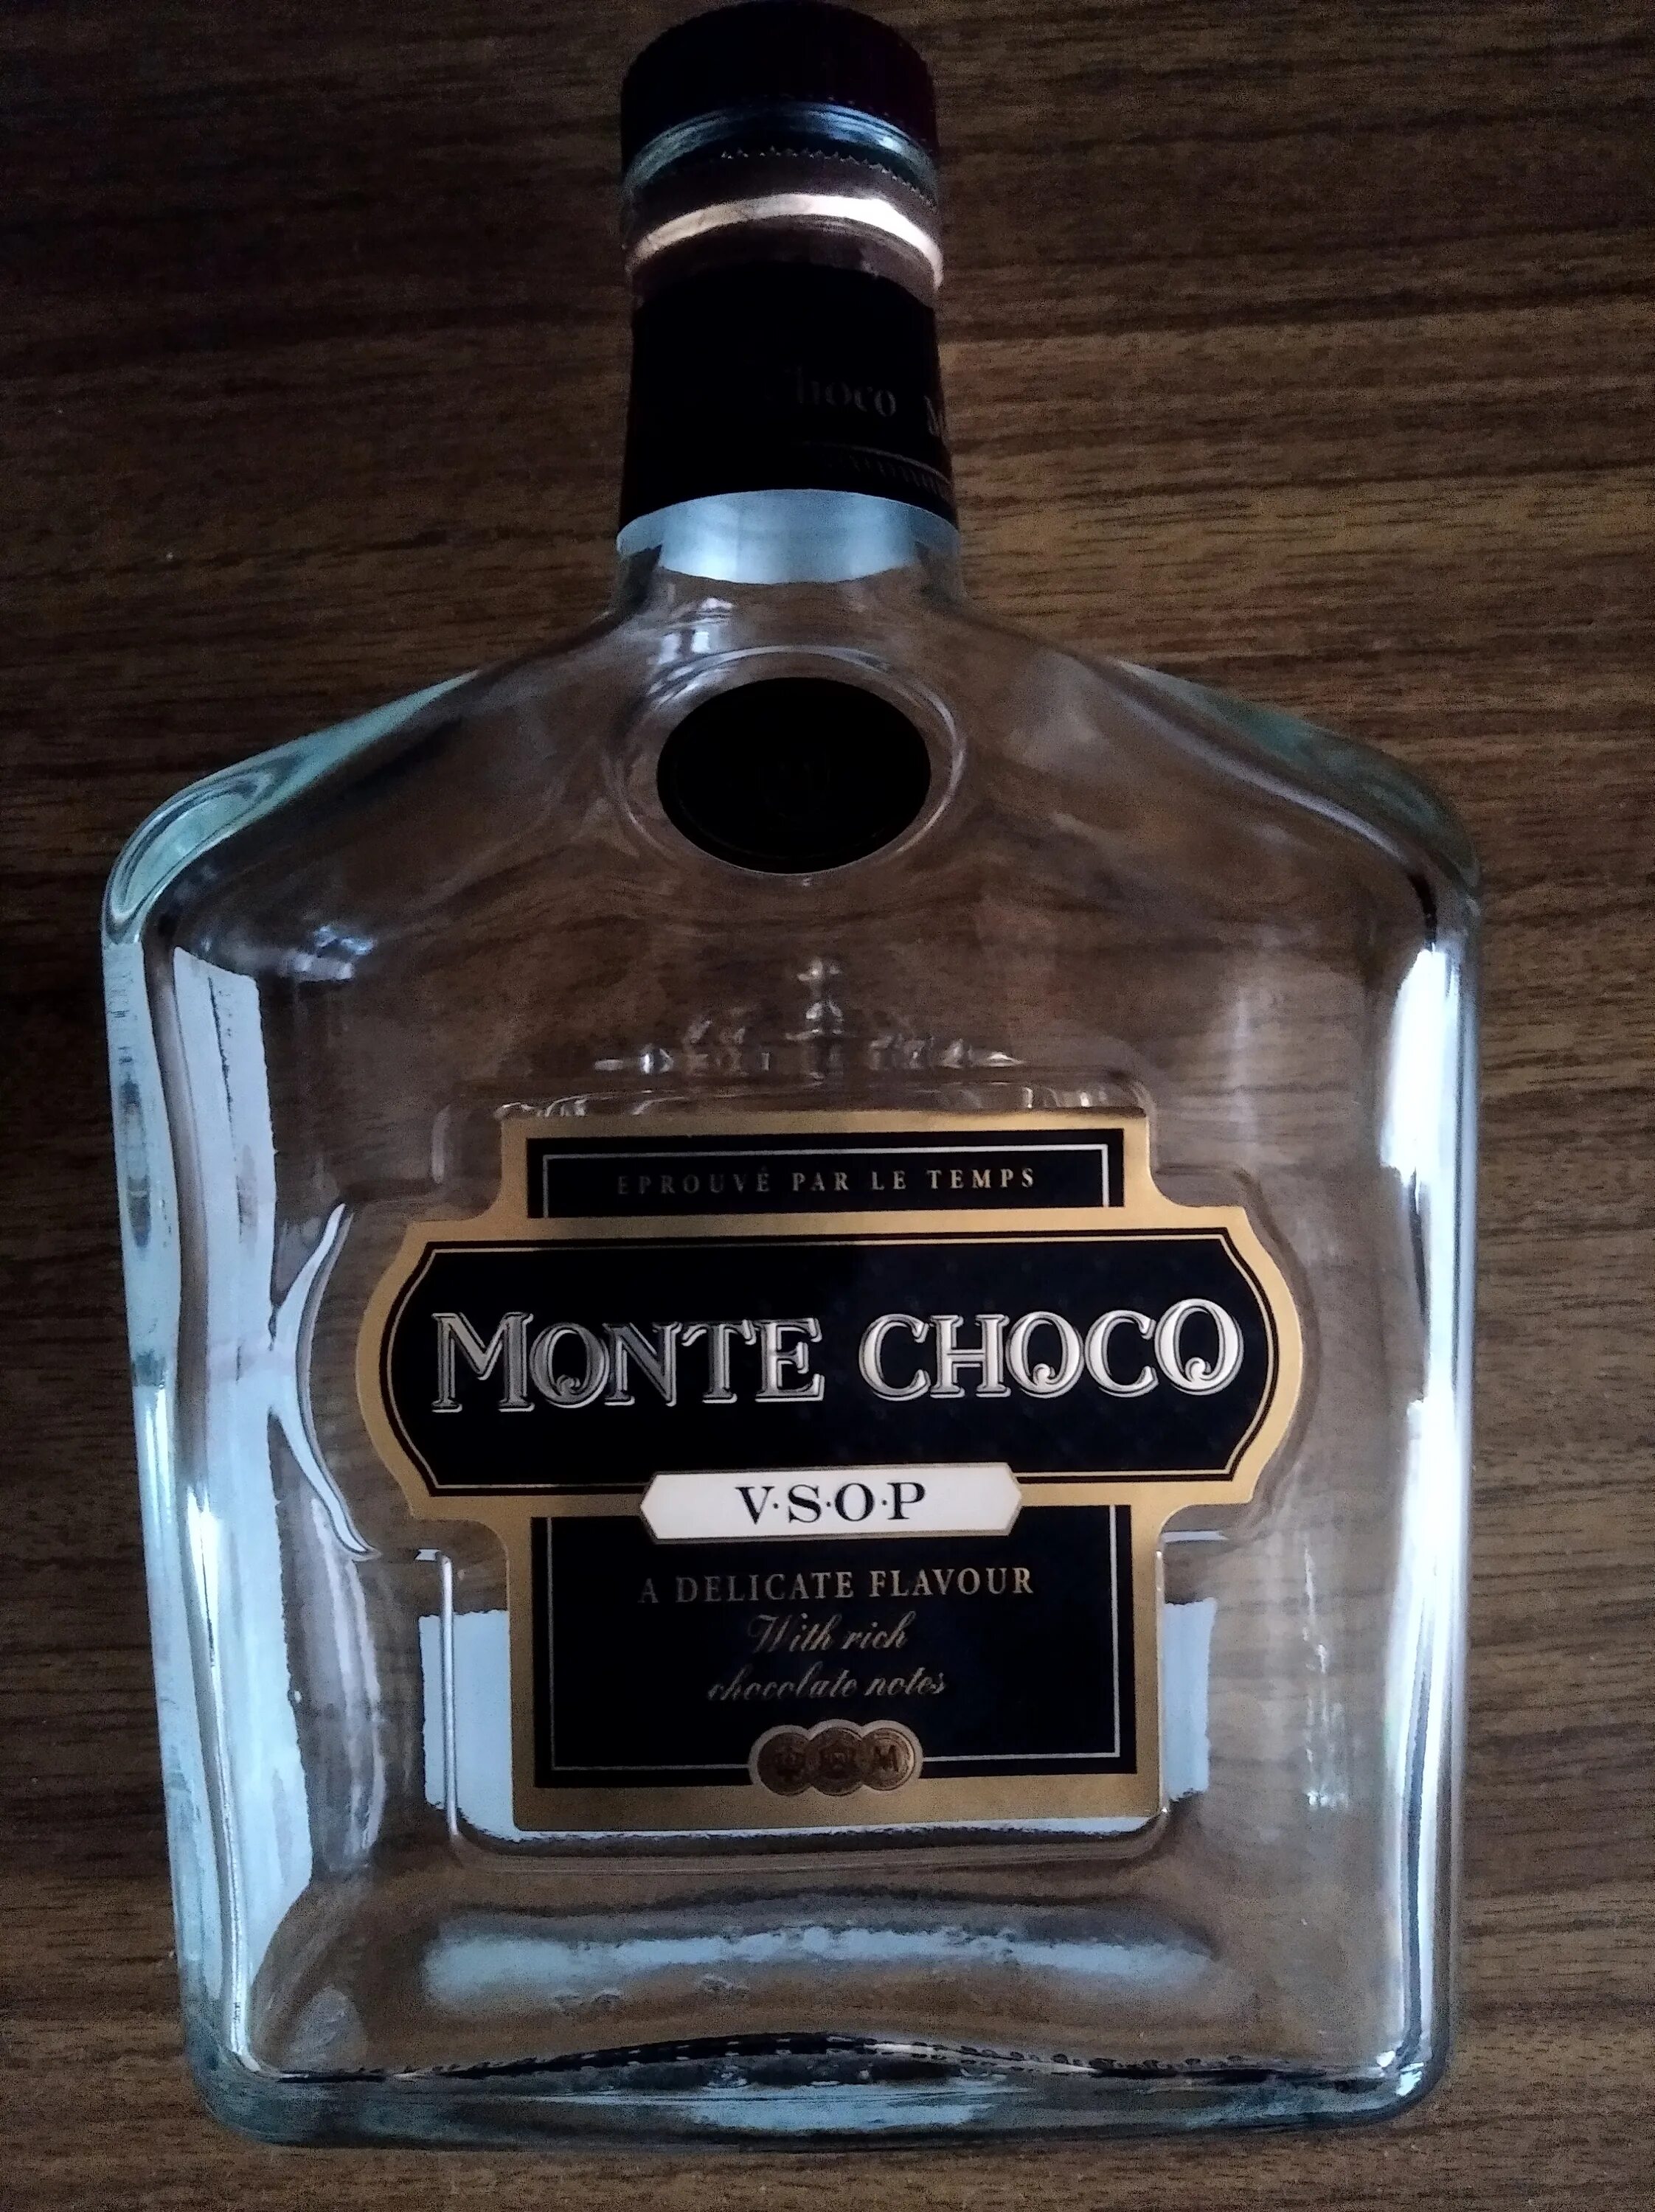 Коньяк монте шоко. Монте Чоко коньяк. Коньячный напиток Монте шоко. Коньяк Монте Чоко VSOP. Monte Choco коньяк шоколадный.